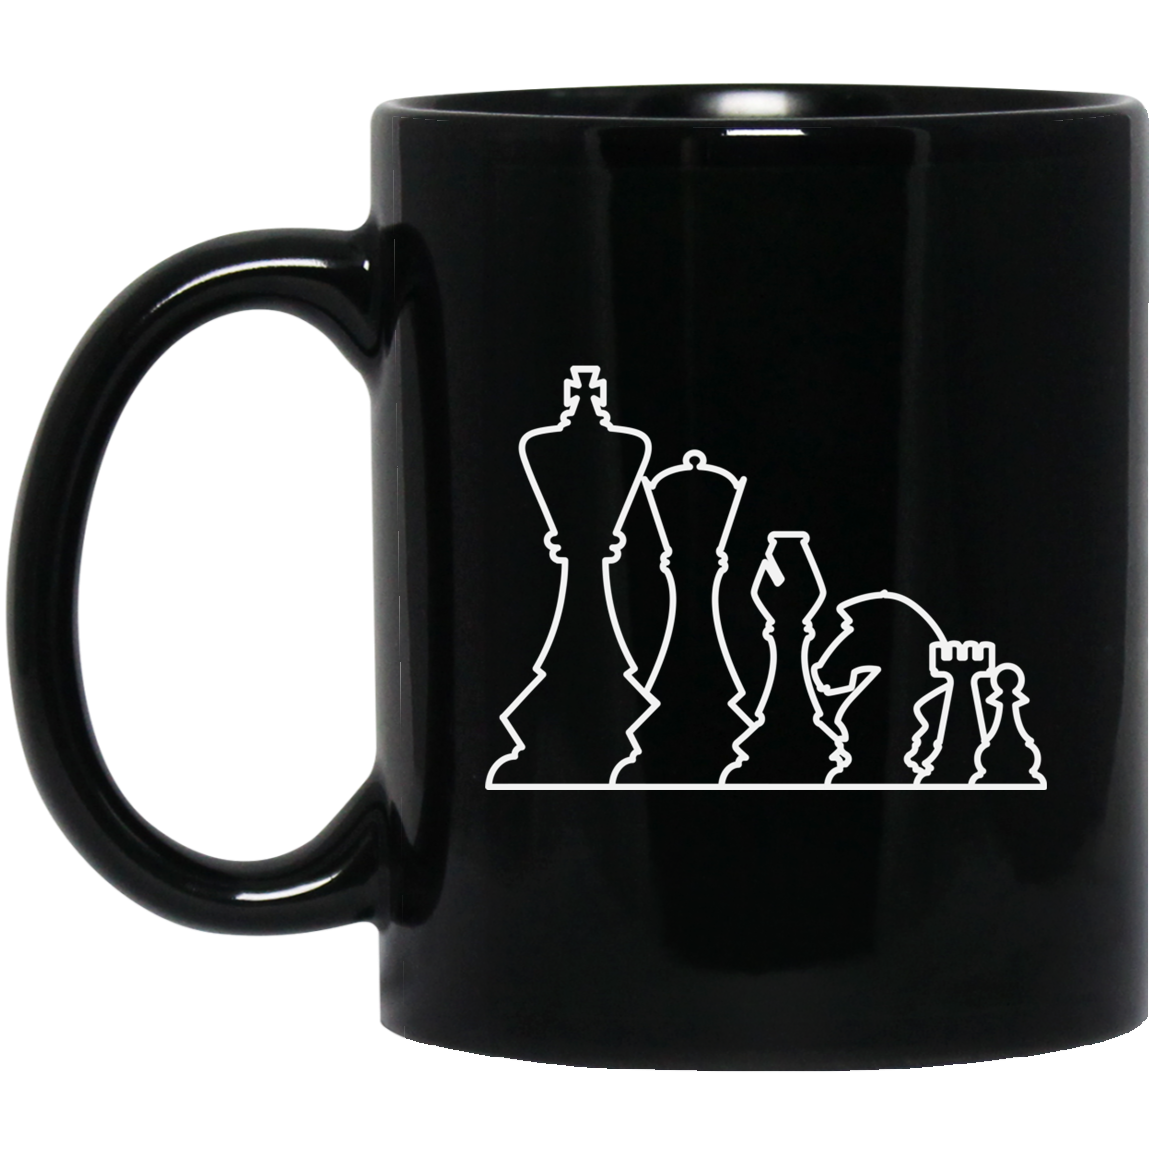 Chess Pieces Mug / Chess Gift Mug / Chess Lover 11 oz. Black Mug